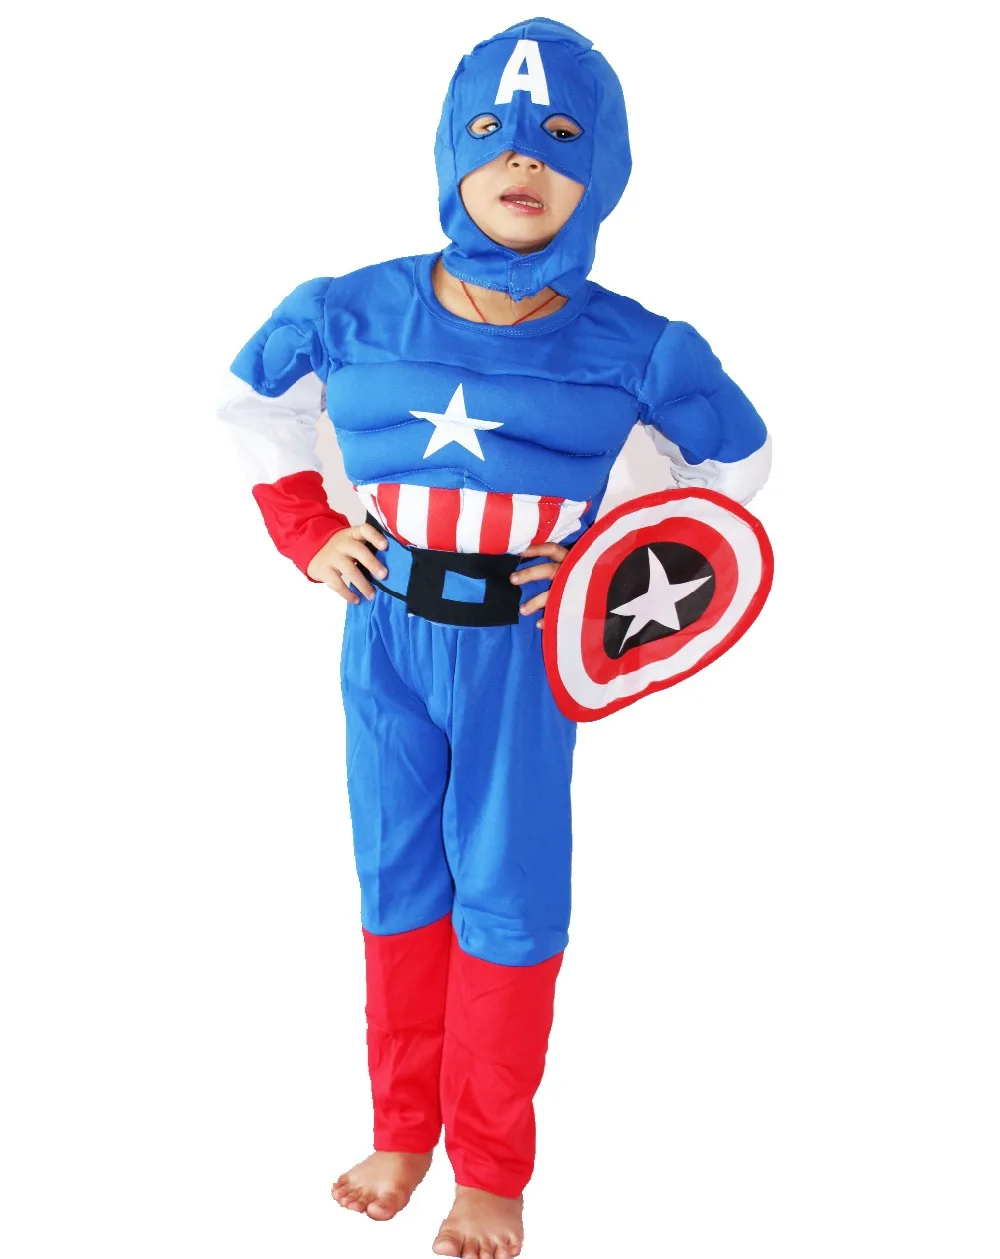 Вечерние костюмы Королевского синего цвета для детей от 3 до 7 лет, костюм на Хеллоуин из комиксов Marvel Одежда для мальчиков: капюшон+ щит+ пояс